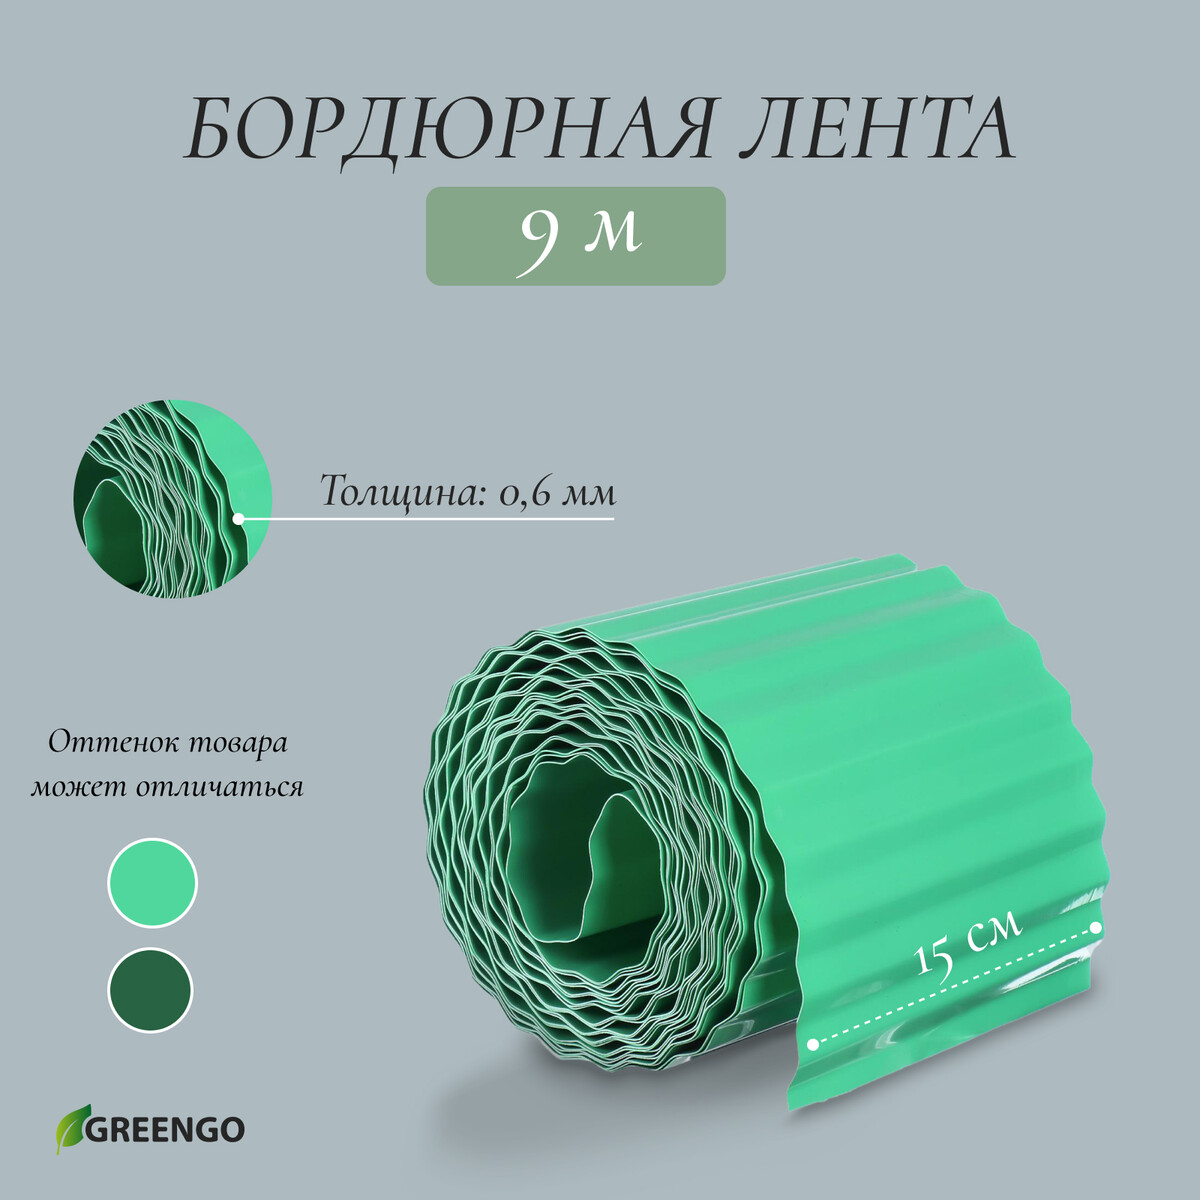 Лента бордюрная, 0.15 × 9 м, толщина 0.6 мм, пластиковая, гофра, зеленая, greengo лента бордюрная 0 2 × 9 м толщина 1 2 мм пластиковая фигурная коричневая